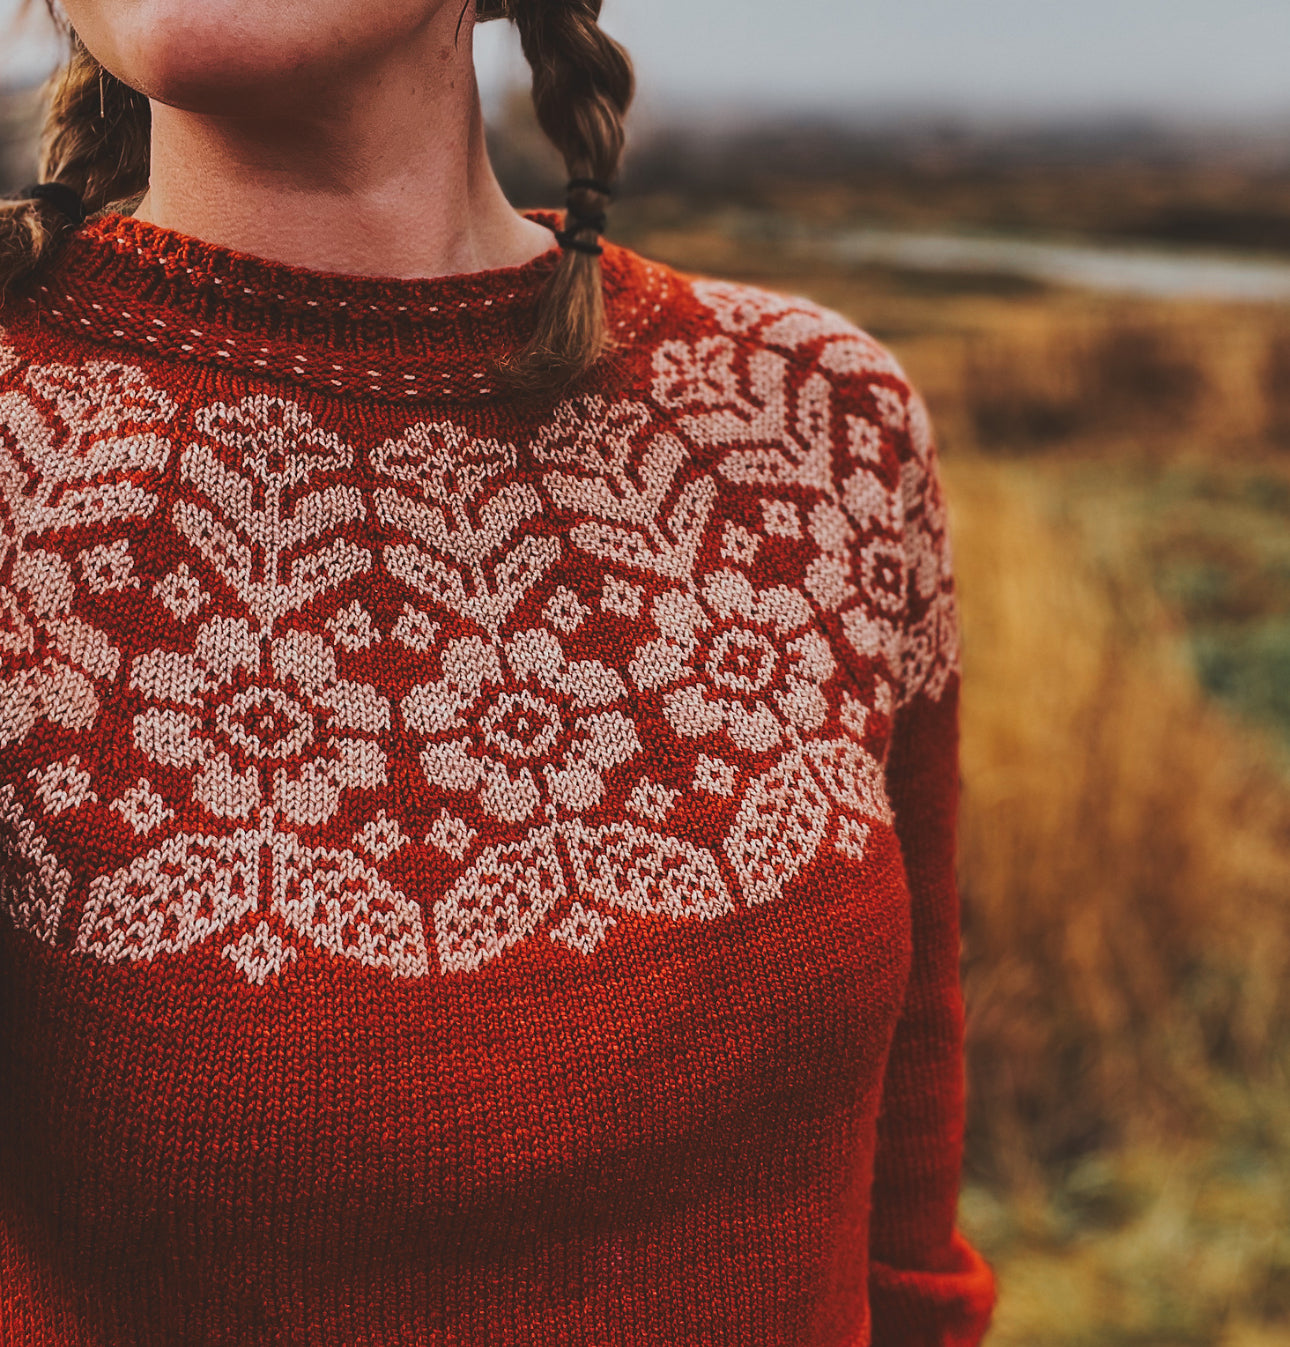 Autumn Alpine Sweater Kit by Caitlin Hunter